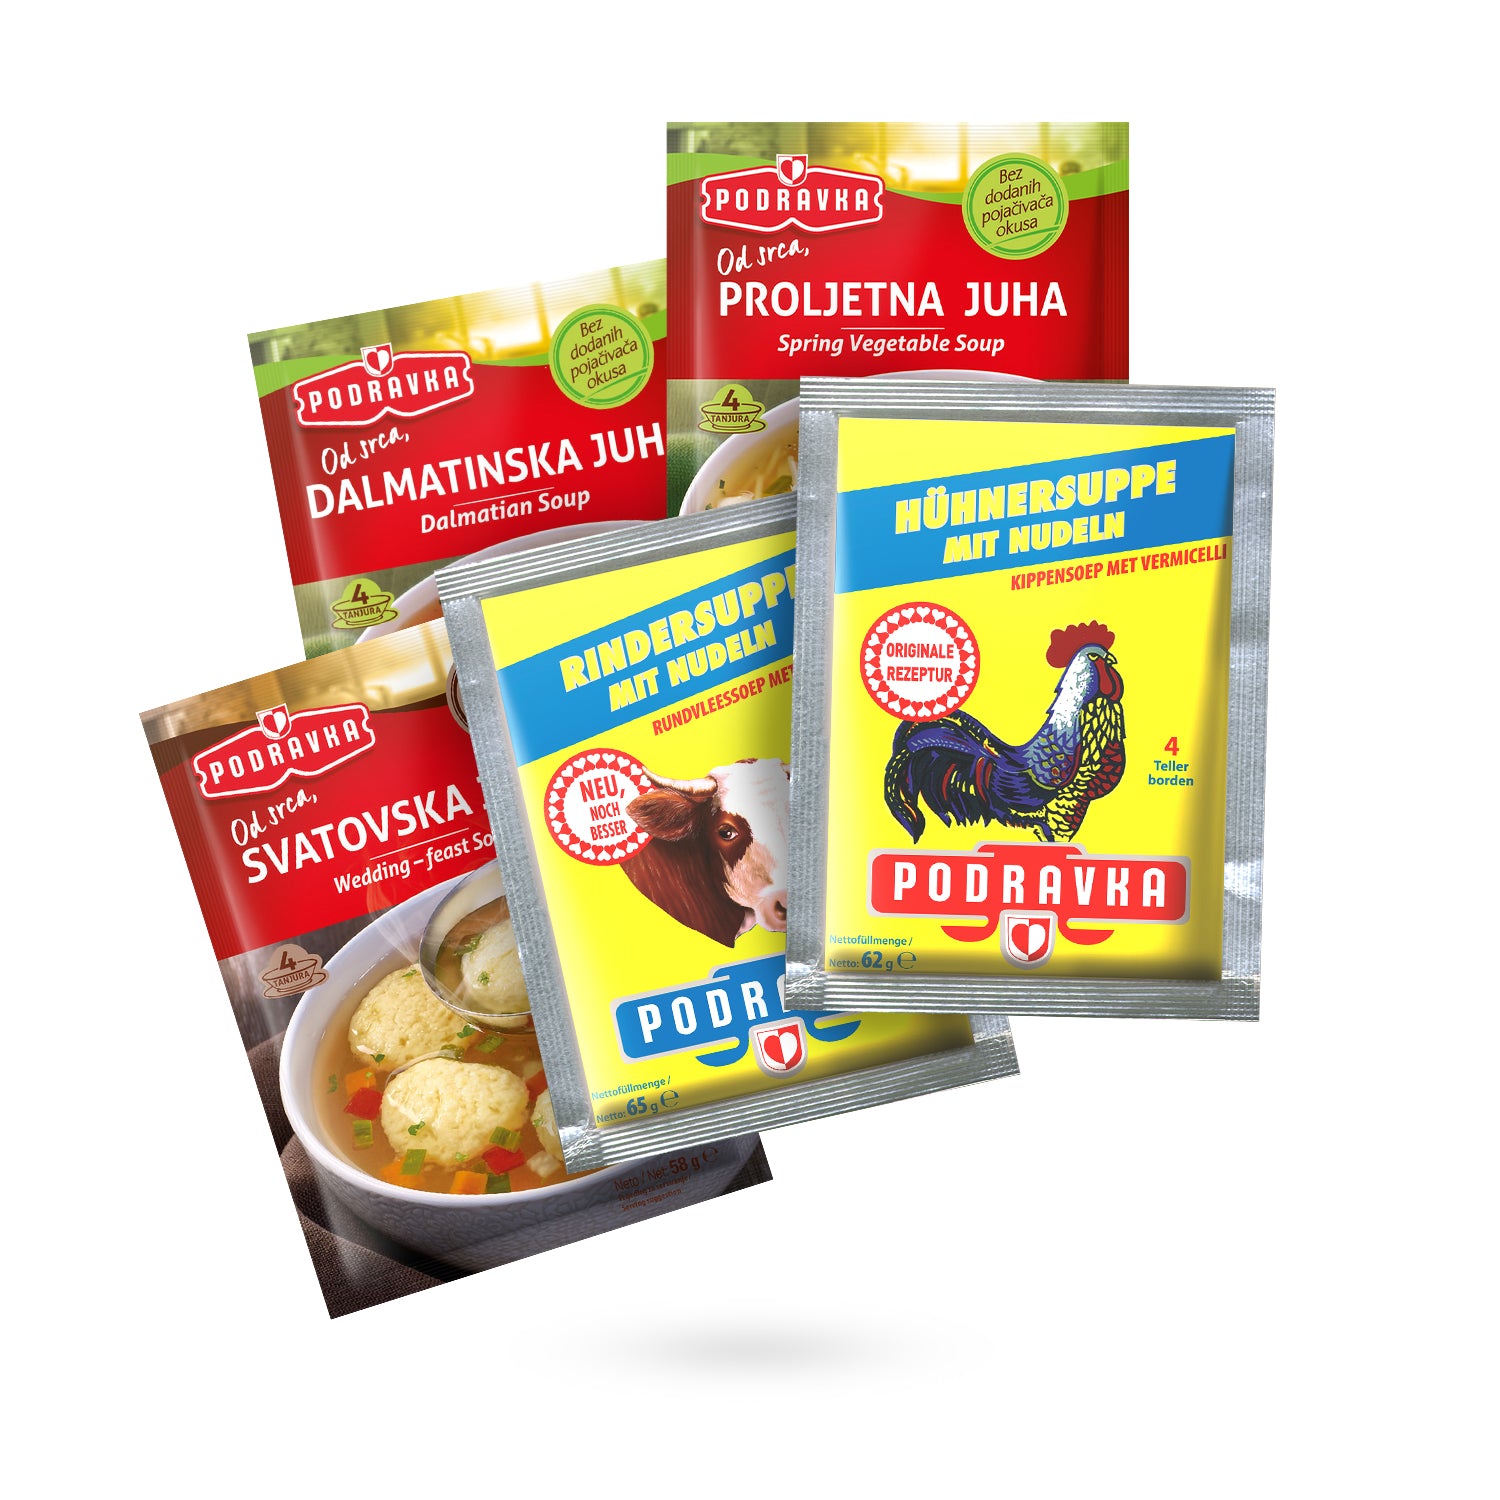 Verschiedene Suppen von Podravka als Probierpaket